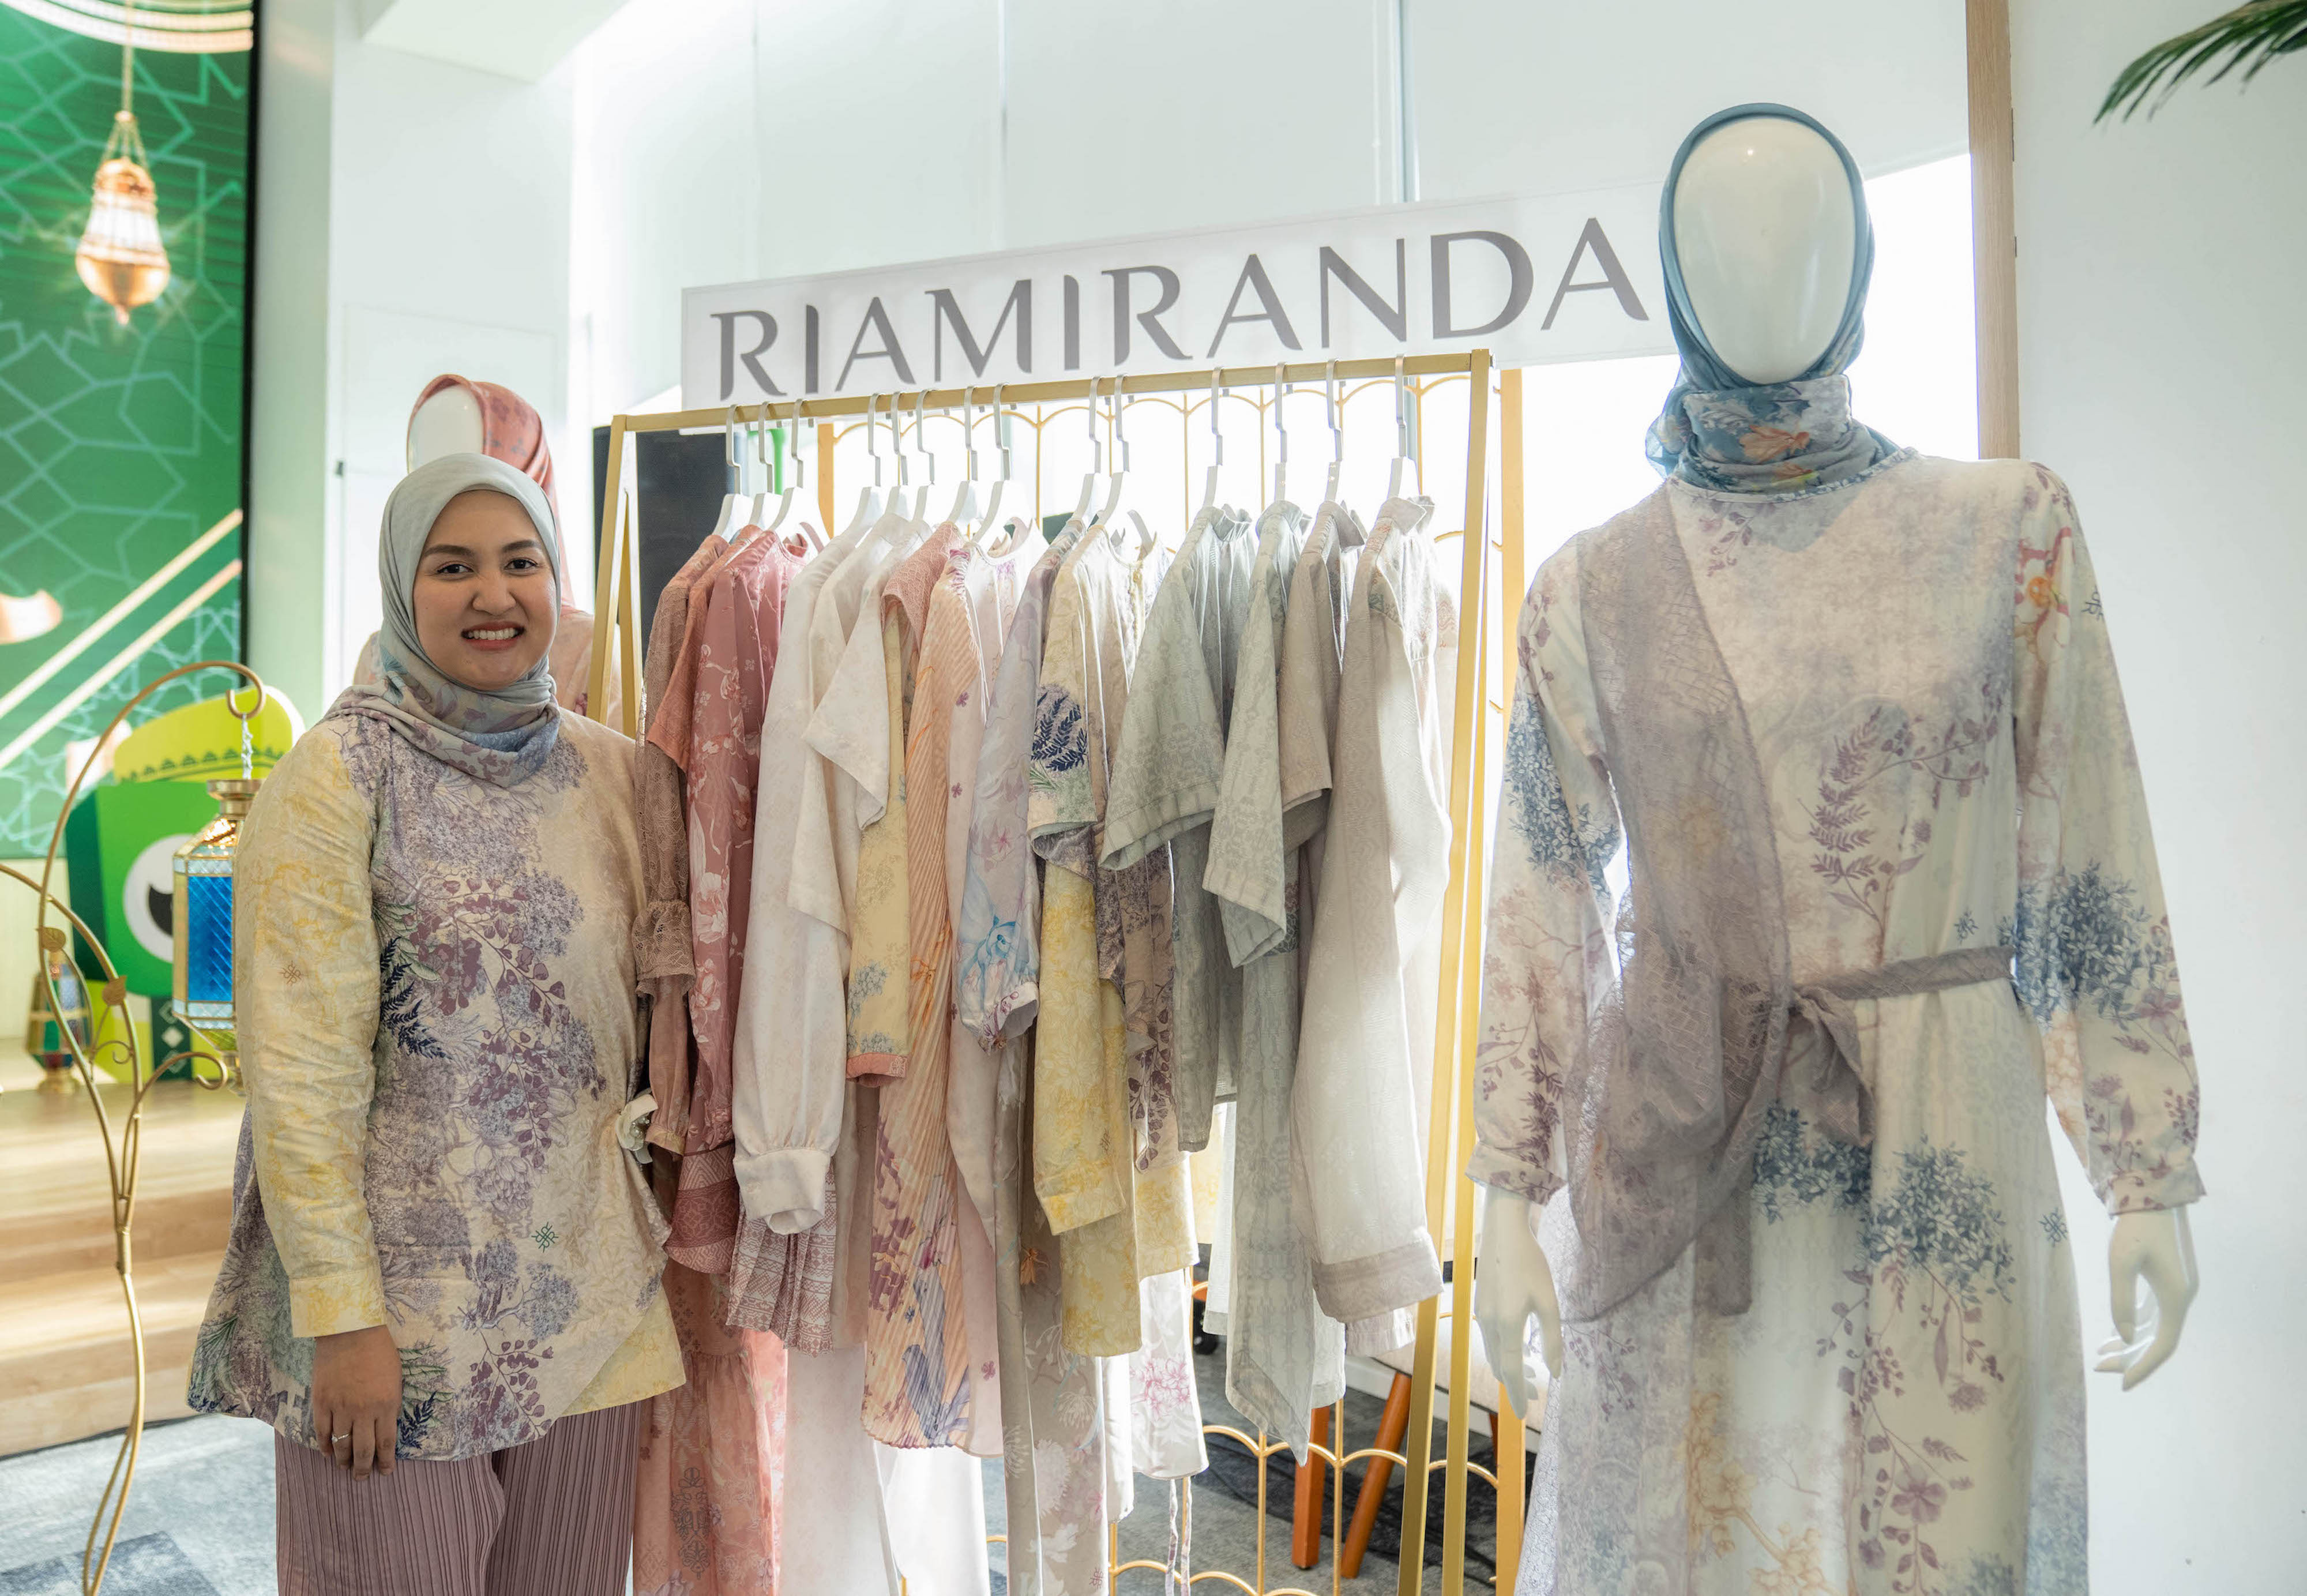 Koleksi spesial Ramadan dari perancang Ria Miranda (sumber gambar : Tokopedia)